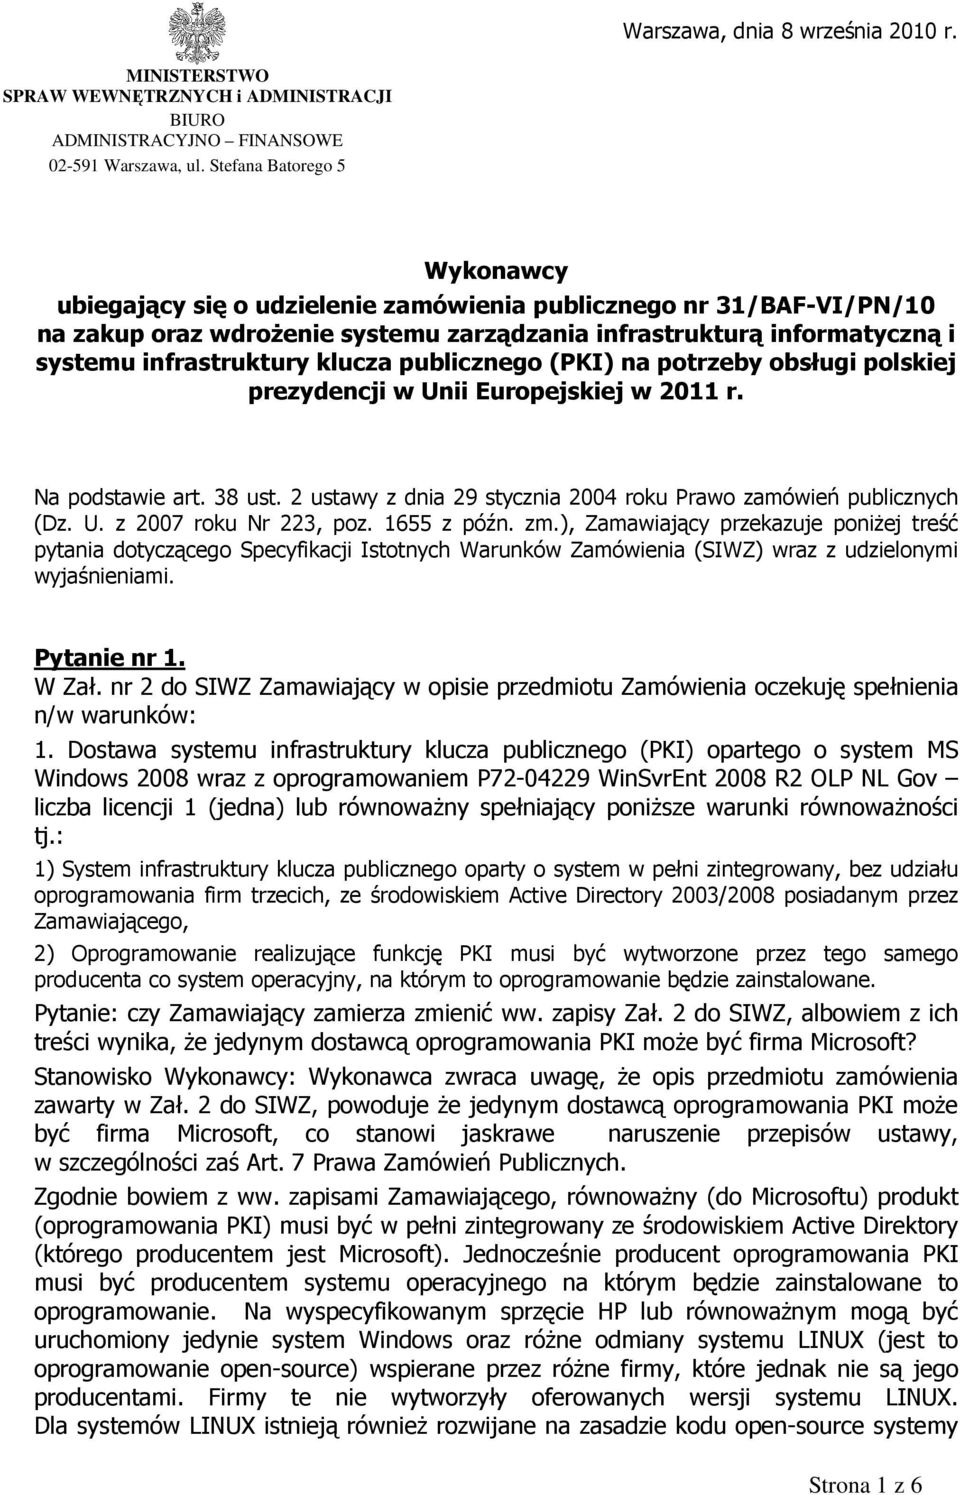 klucza publicznego (PKI) na potrzeby obsługi polskiej prezydencji w Unii Europejskiej w 2011 r. Na podstawie art. 38 ust. 2 ustawy z dnia 29 stycznia 2004 roku Prawo zamówień publicznych (Dz. U. z 2007 roku Nr 223, poz.